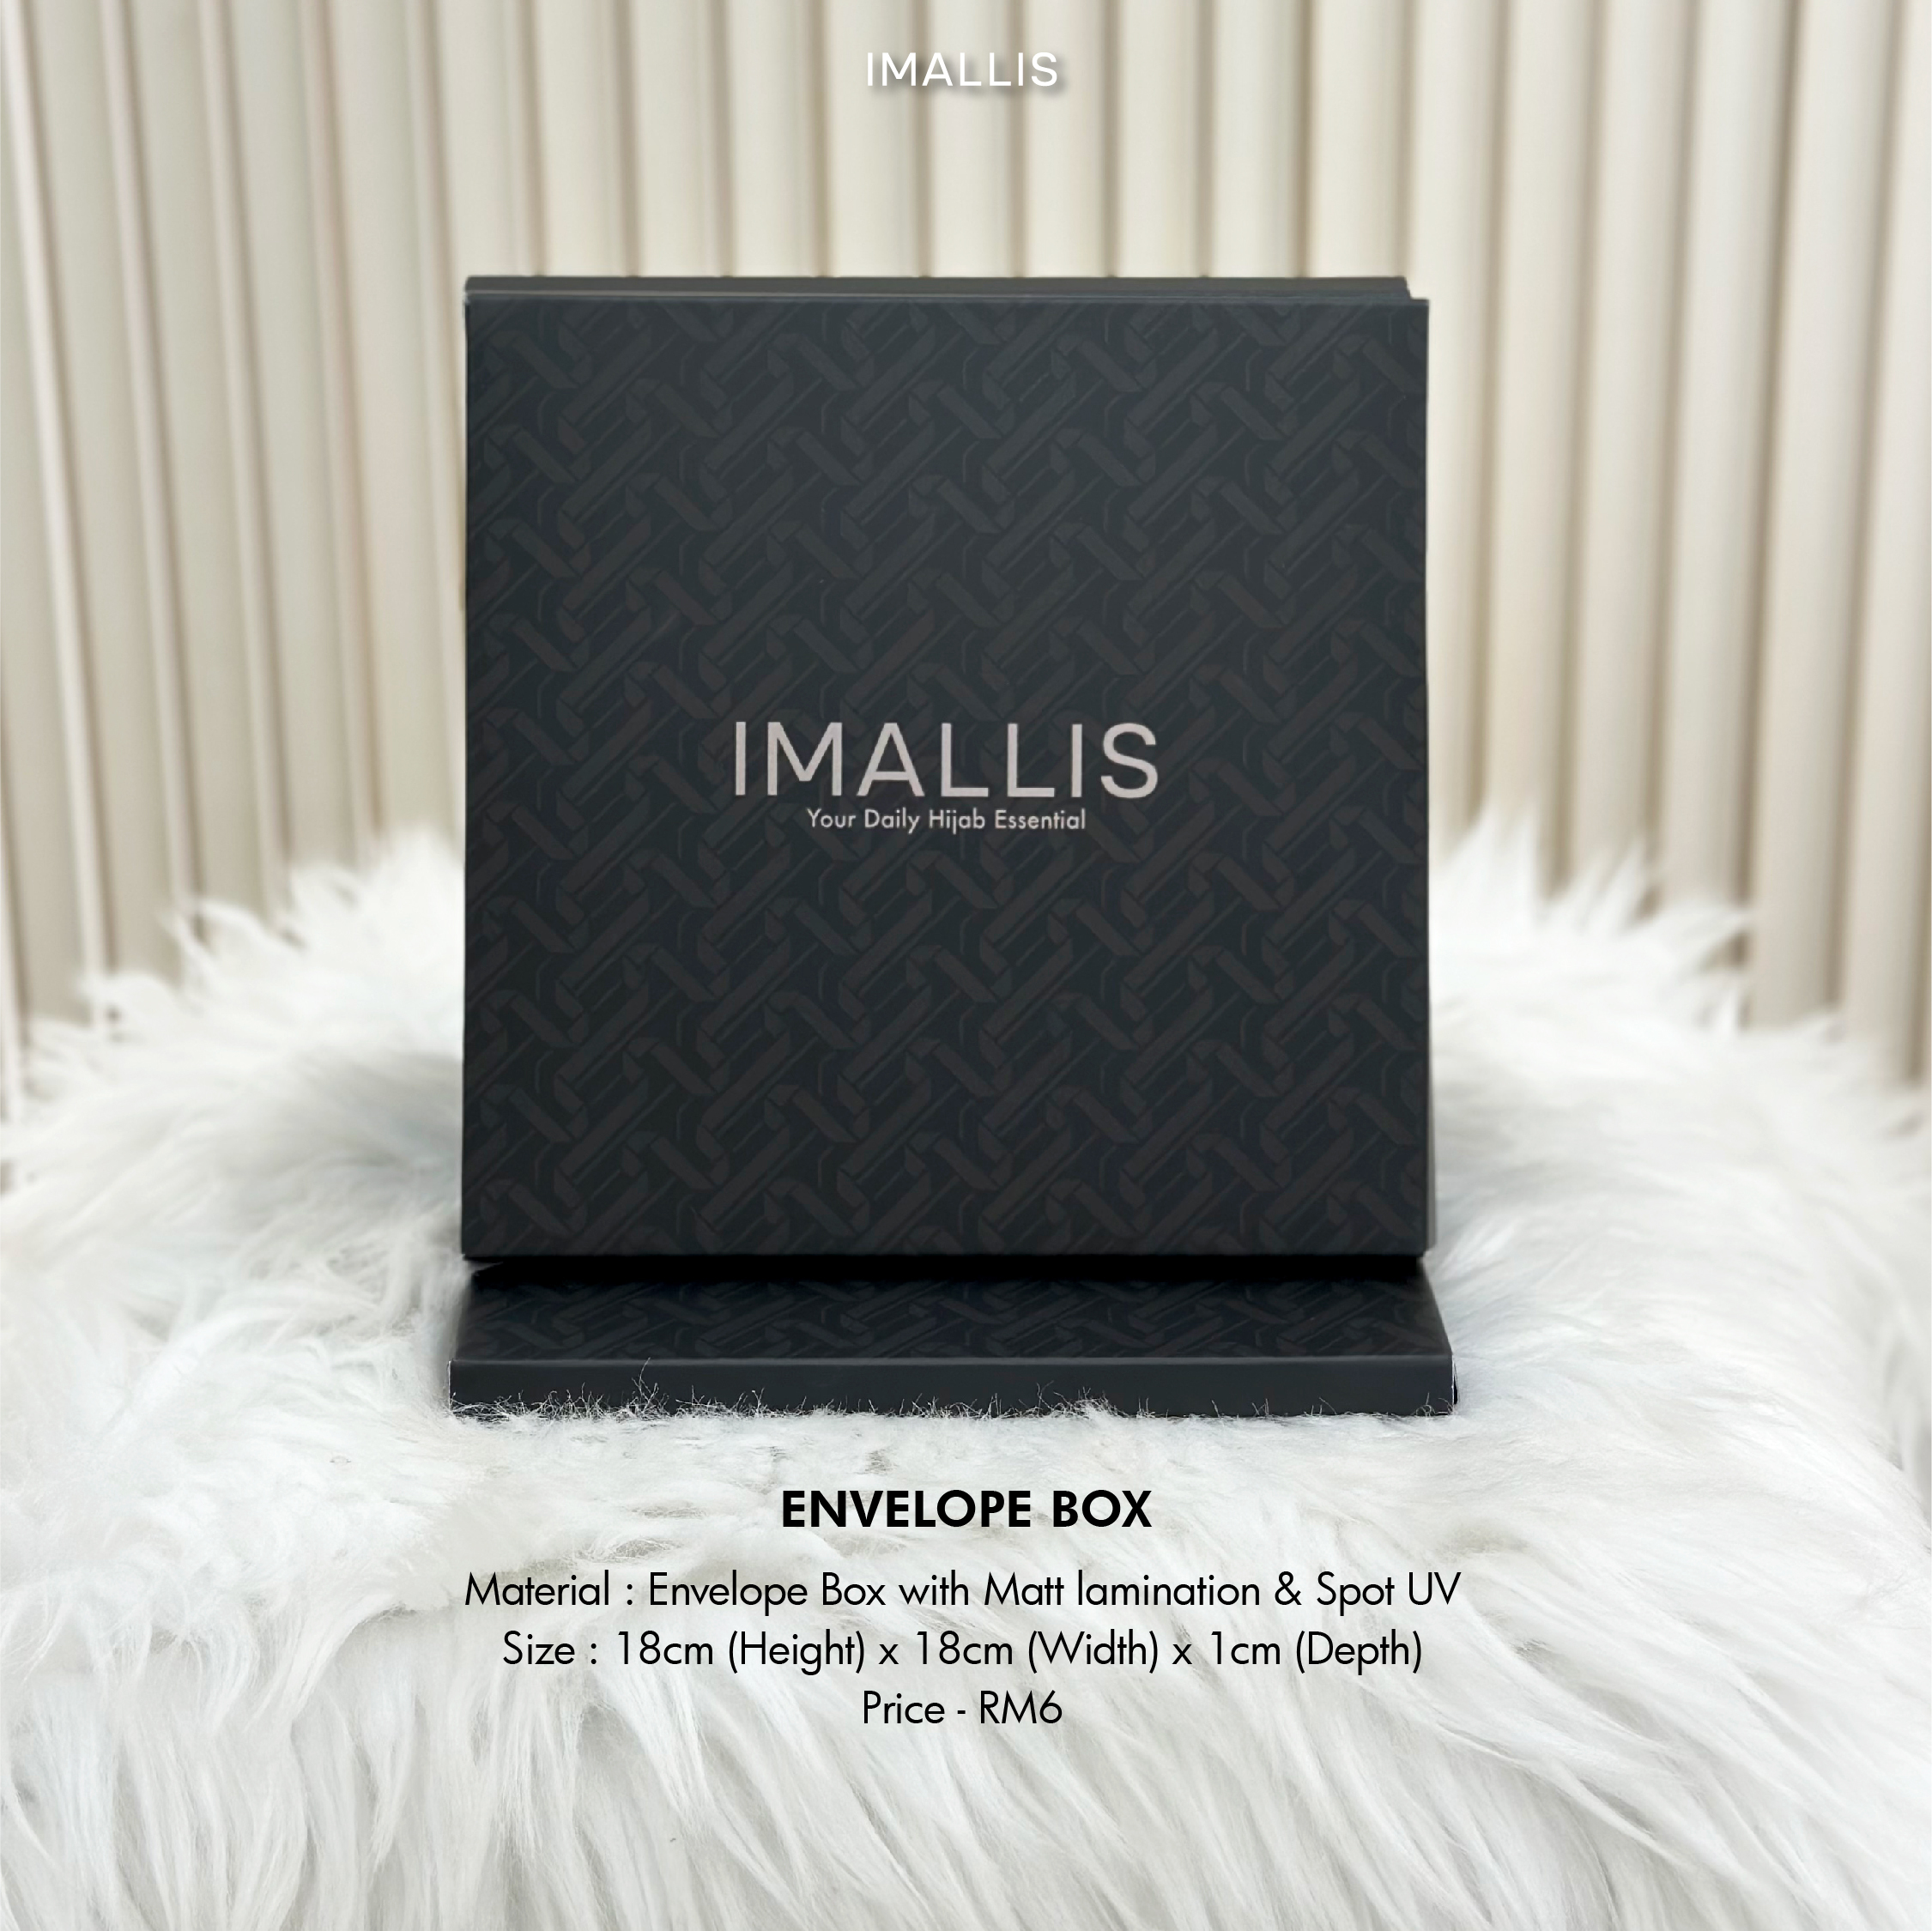 ENVELOPE BOX IMALLIS-01